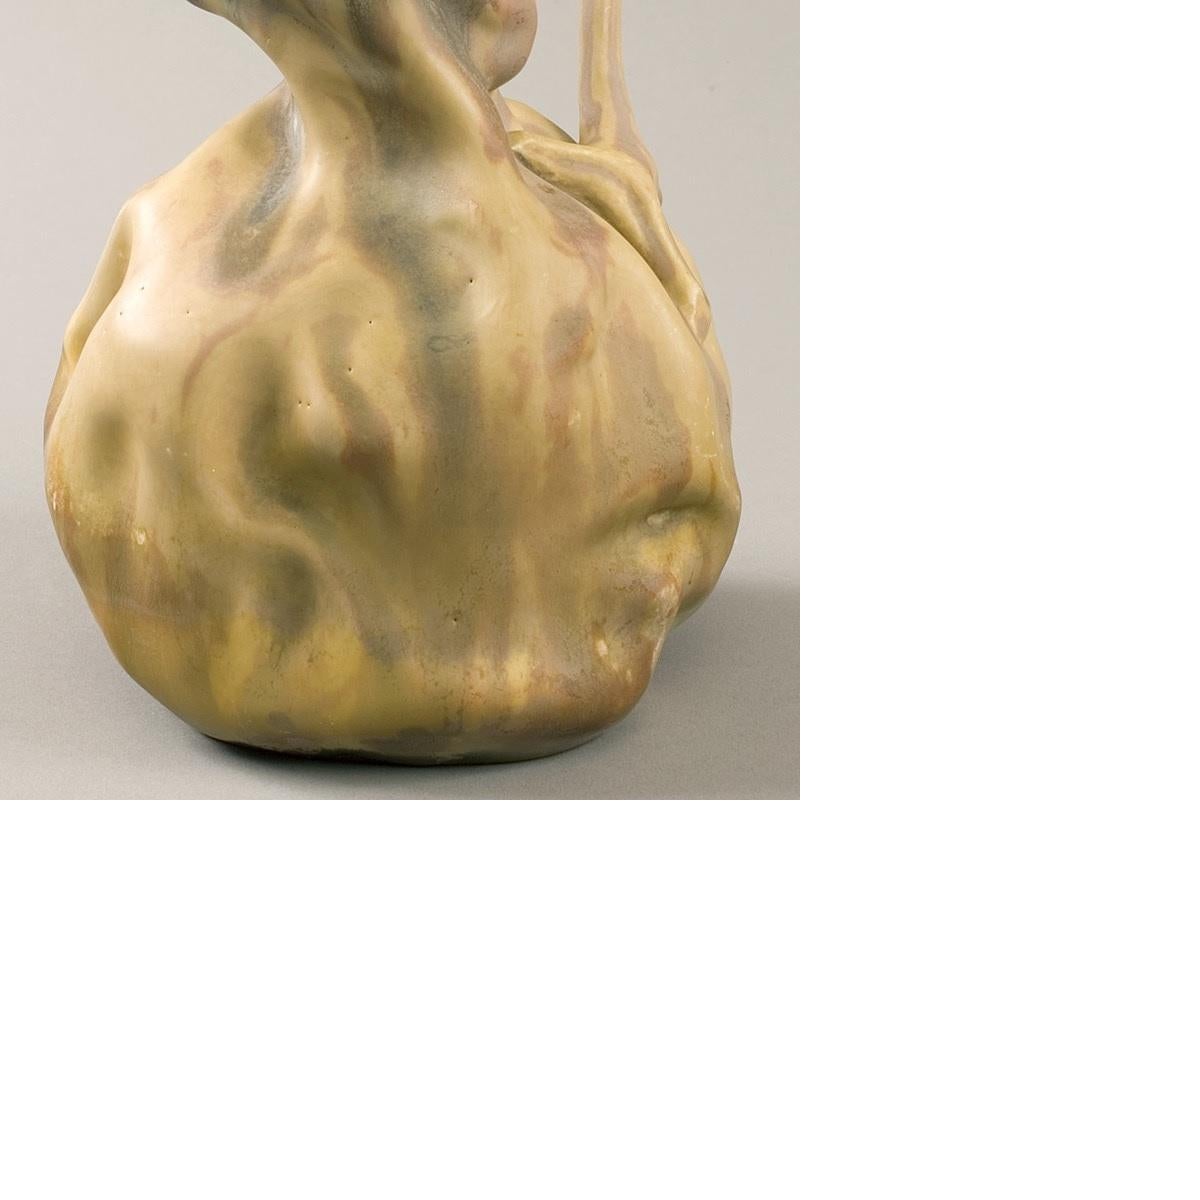 Bussière French Art Nouveau Ceramic “Colocynth” Vase 1